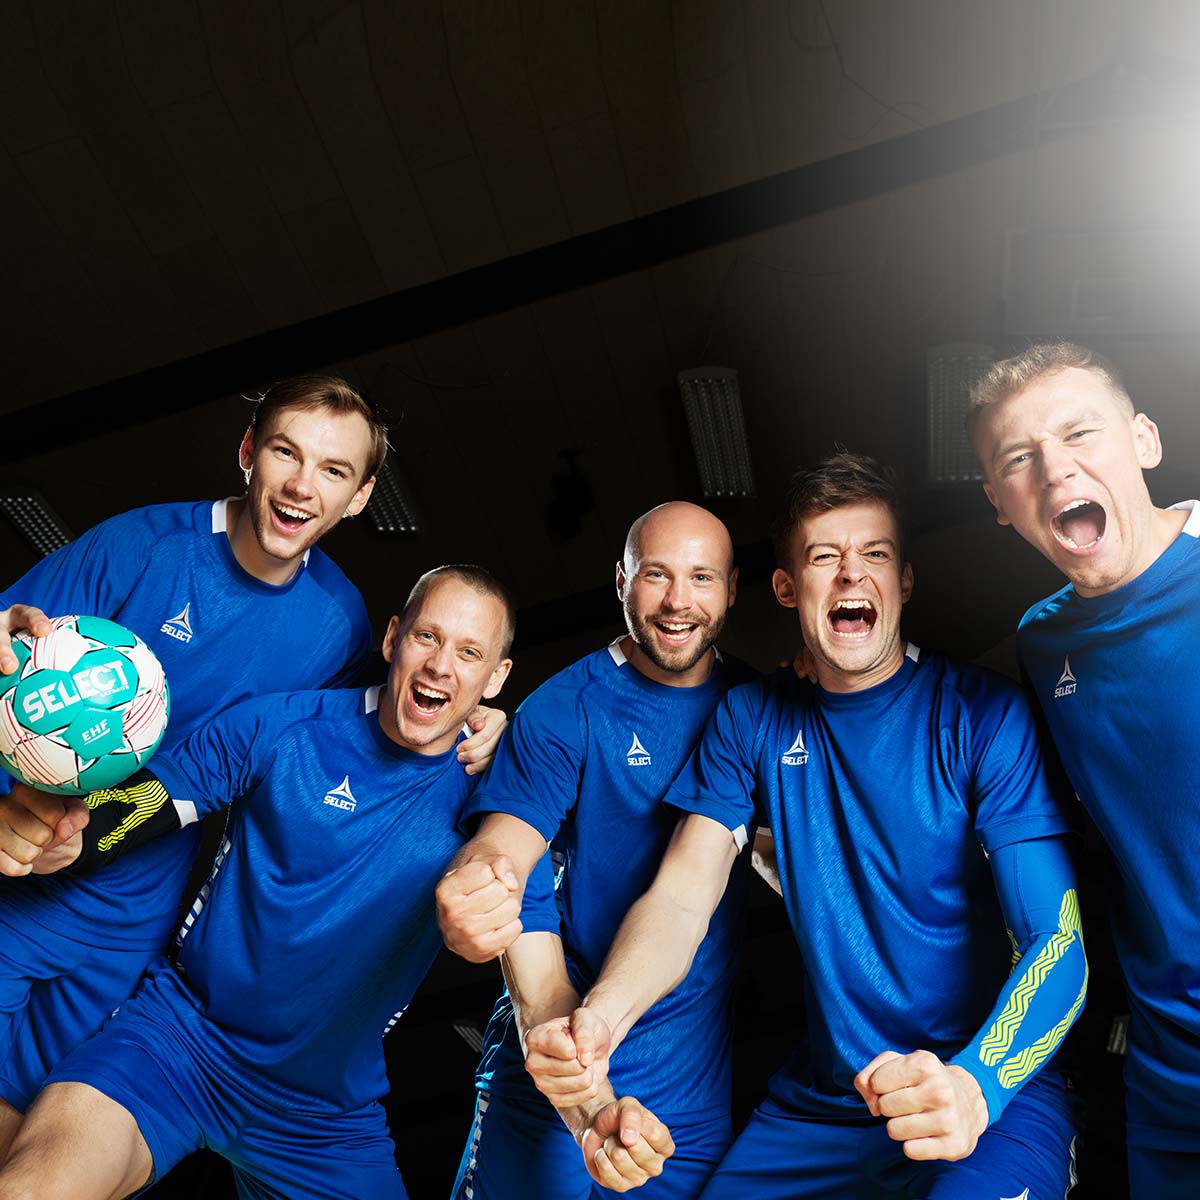 Ballon de handball Mundo SELECT